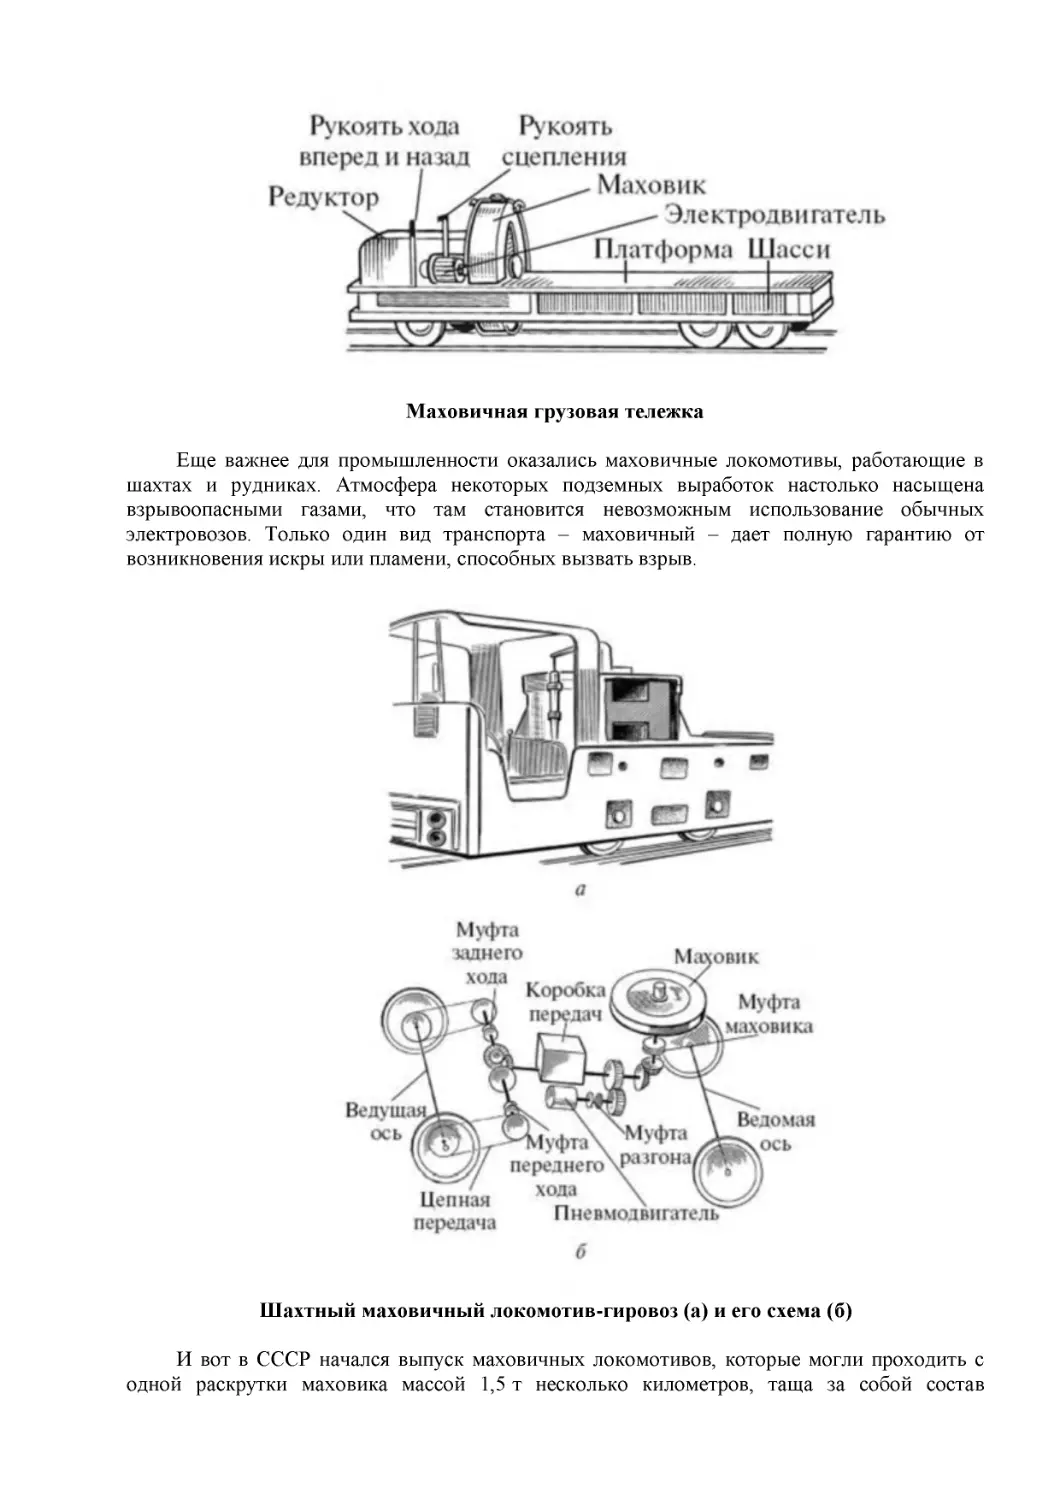 Маховичная грузовая тележка
Шахтный маховичный локомотив-гировоз (а) и его схема (б)